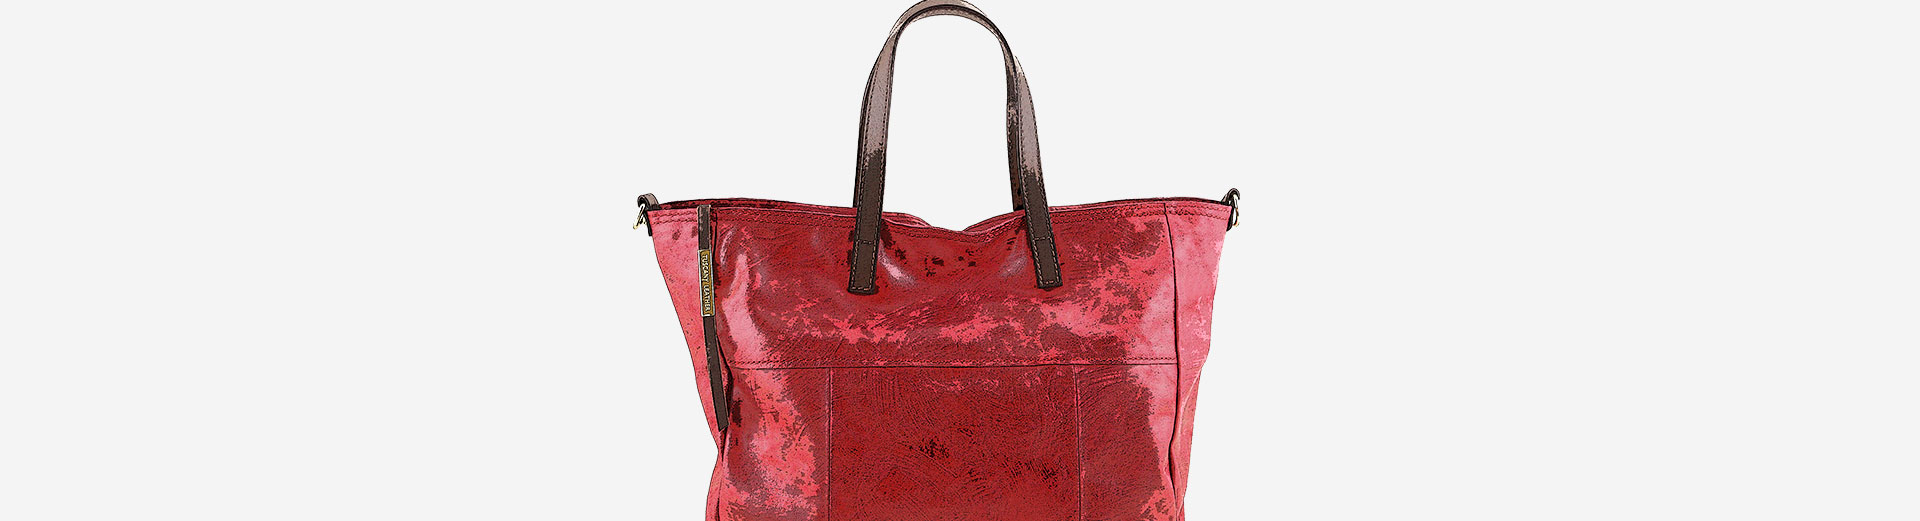 TL Bag Saffiano Leather Tote Cognac TL141696